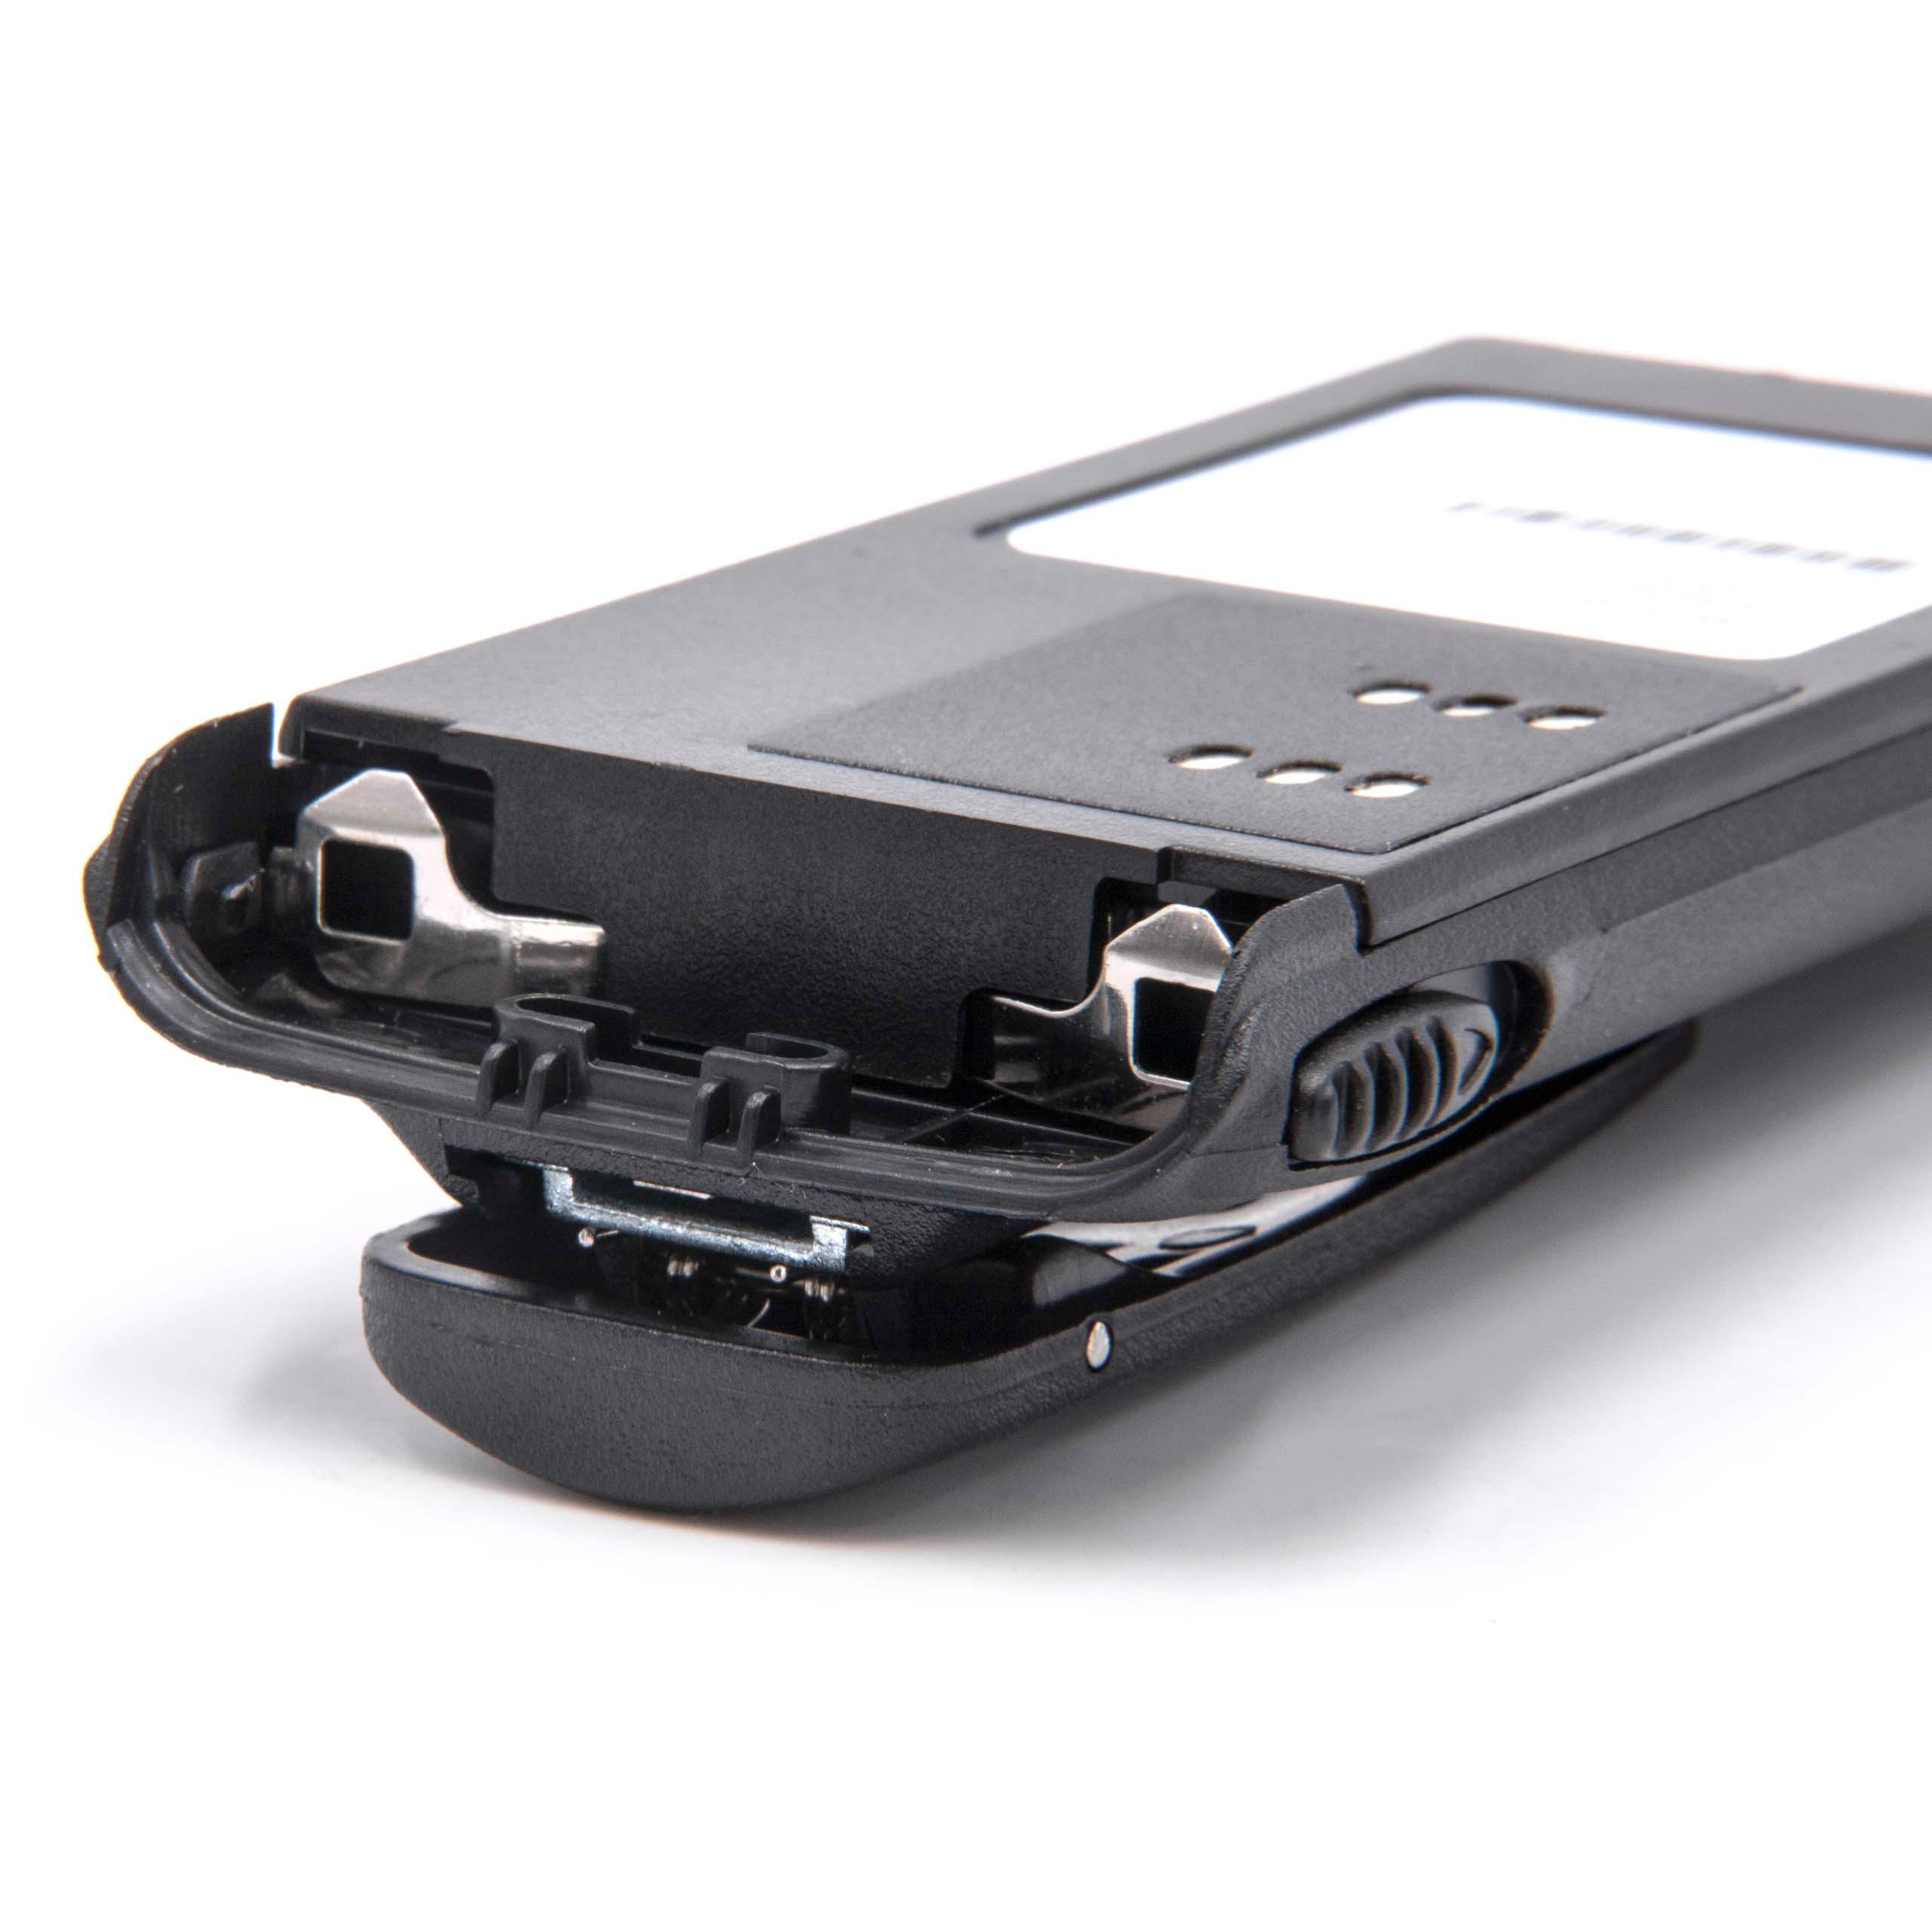 Batteria per dispositivo radio sostituisce Motorola HMNN4151, HMNN4154, HMNN4158 Motorola - 2100mAh 7,2V NiMH